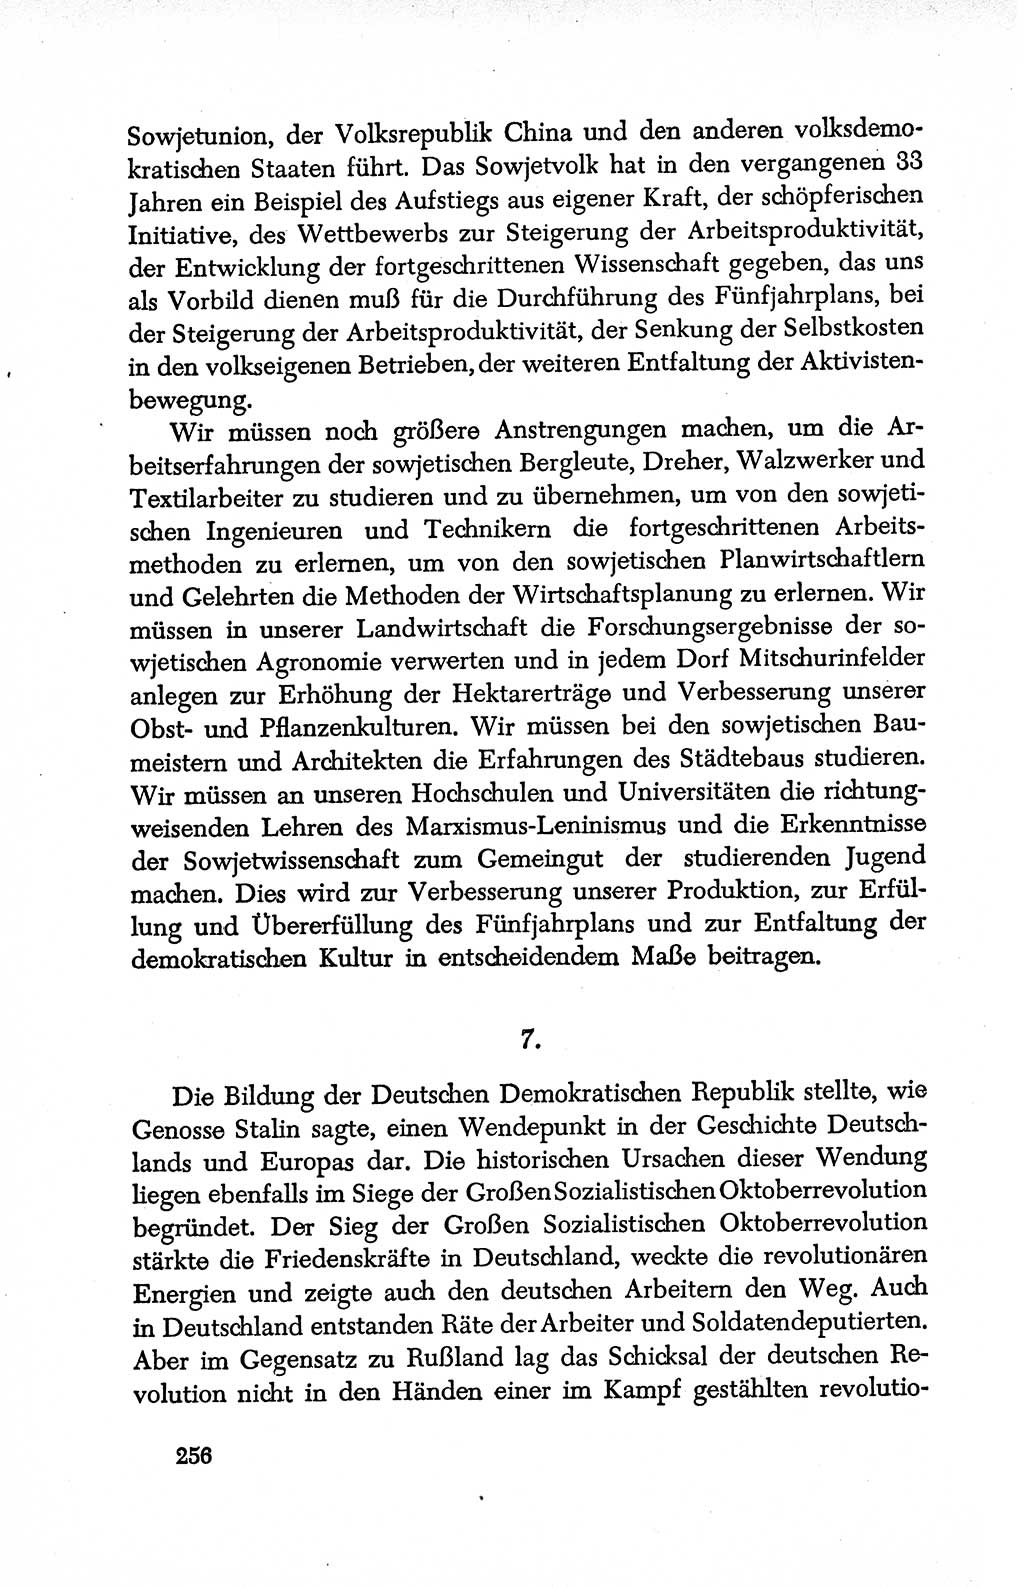 Dokumente der Sozialistischen Einheitspartei Deutschlands (SED) [Deutsche Demokratische Republik (DDR)] 1950-1952, Seite 256 (Dok. SED DDR 1950-1952, S. 256)